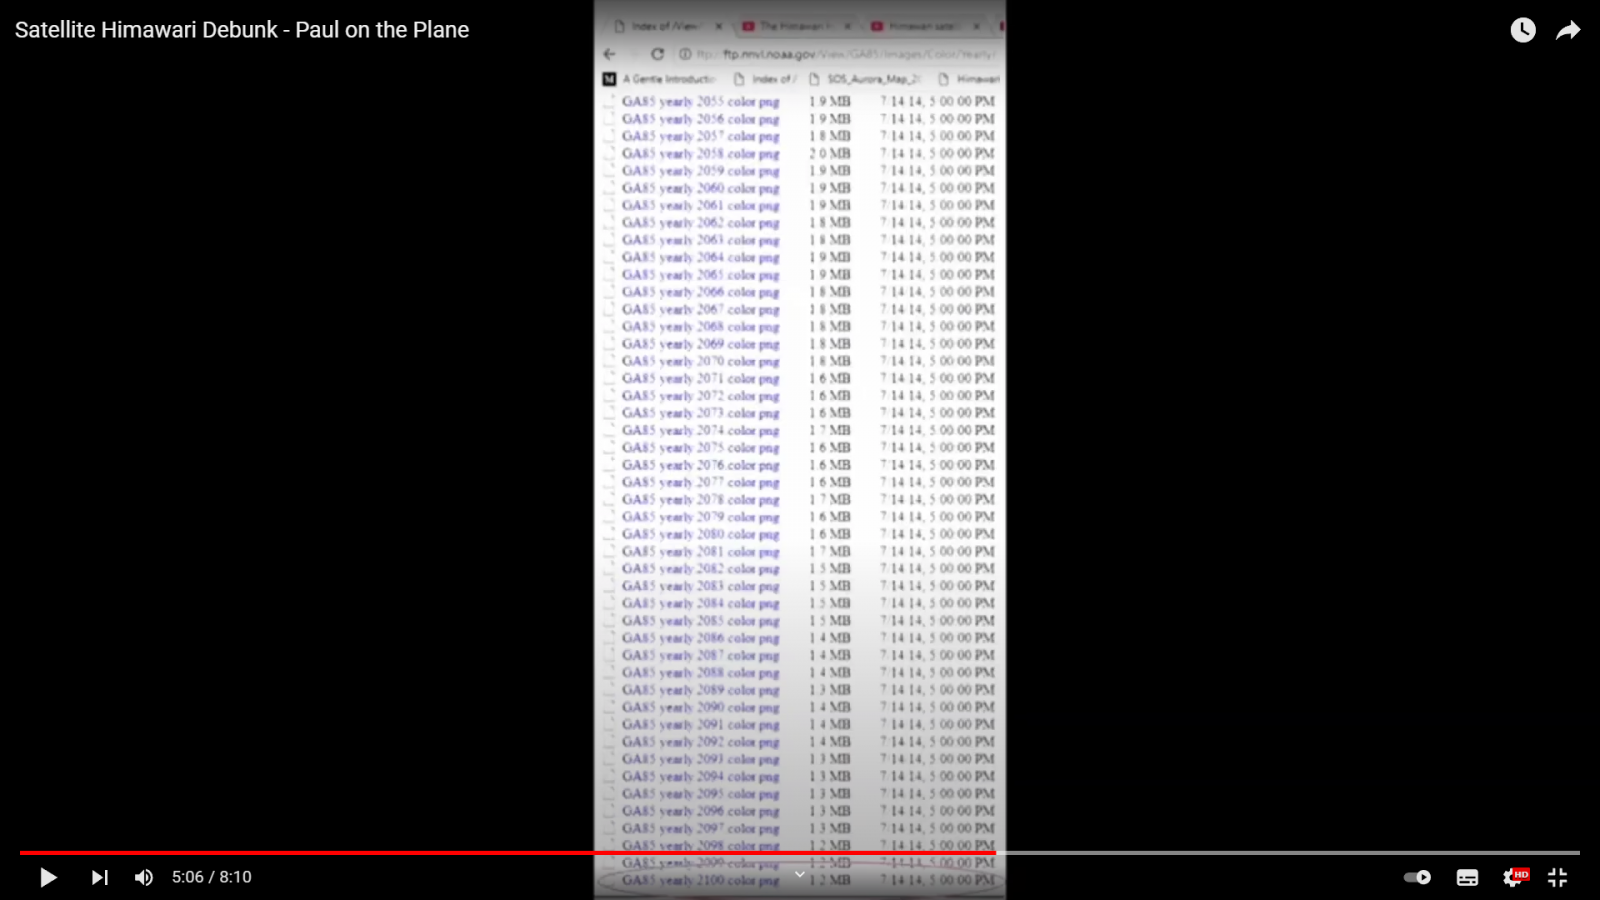 Satellite Himawari Debunk - Paul on the Plane - YouTube - Brave 18.1.2022. 14_16_47.png